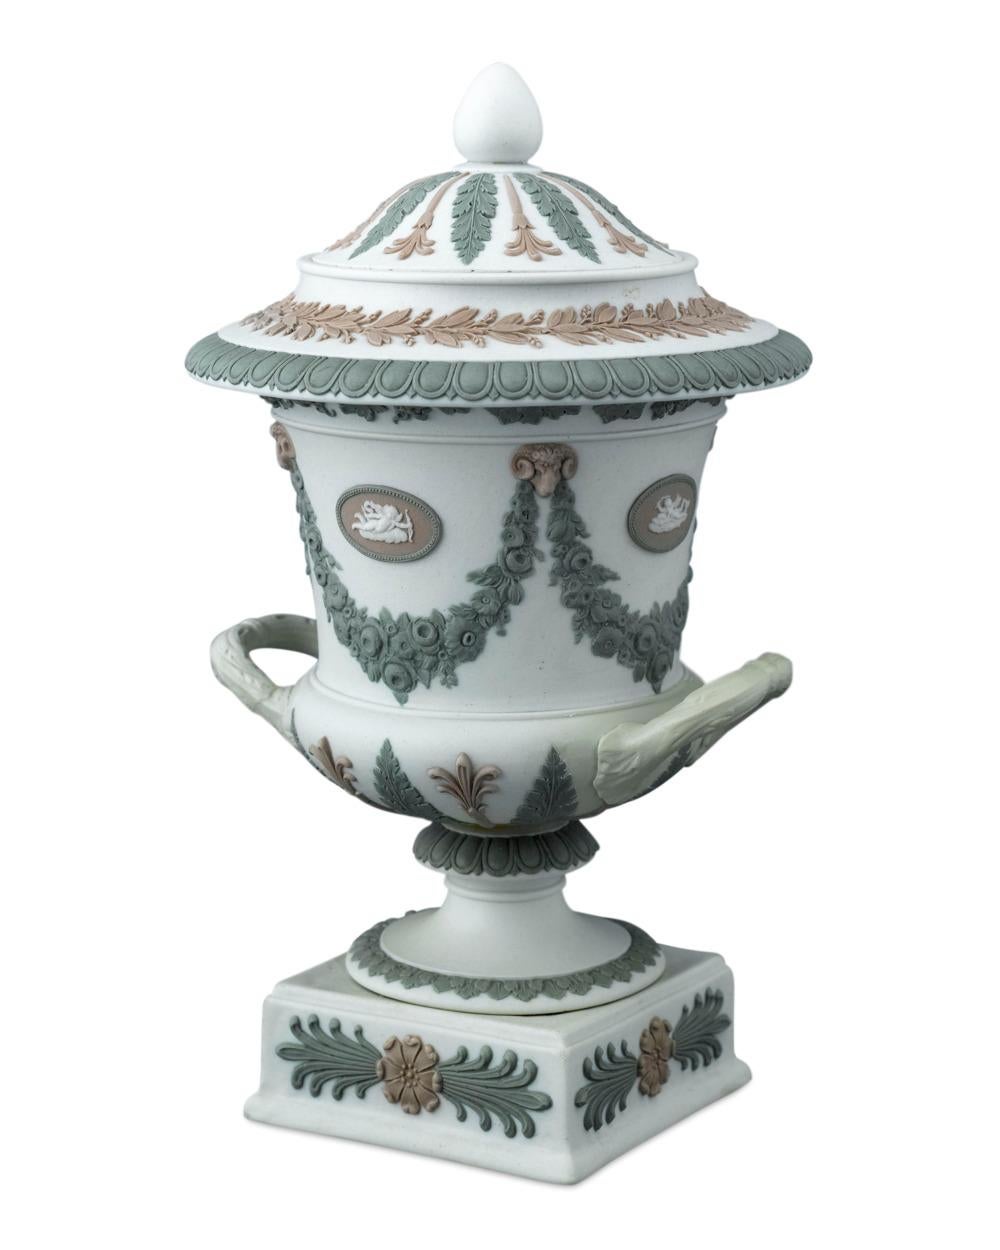 Ce vase exceptionnel et rare en jaspe tricolore de Wedgwood est un exemple de l'art classique de cette entreprise renommée. Réalisé en jaspe, peut-être la plus grande des innovations de Josiah Wedgwood en matière de porcelaine, sous la forme d'un